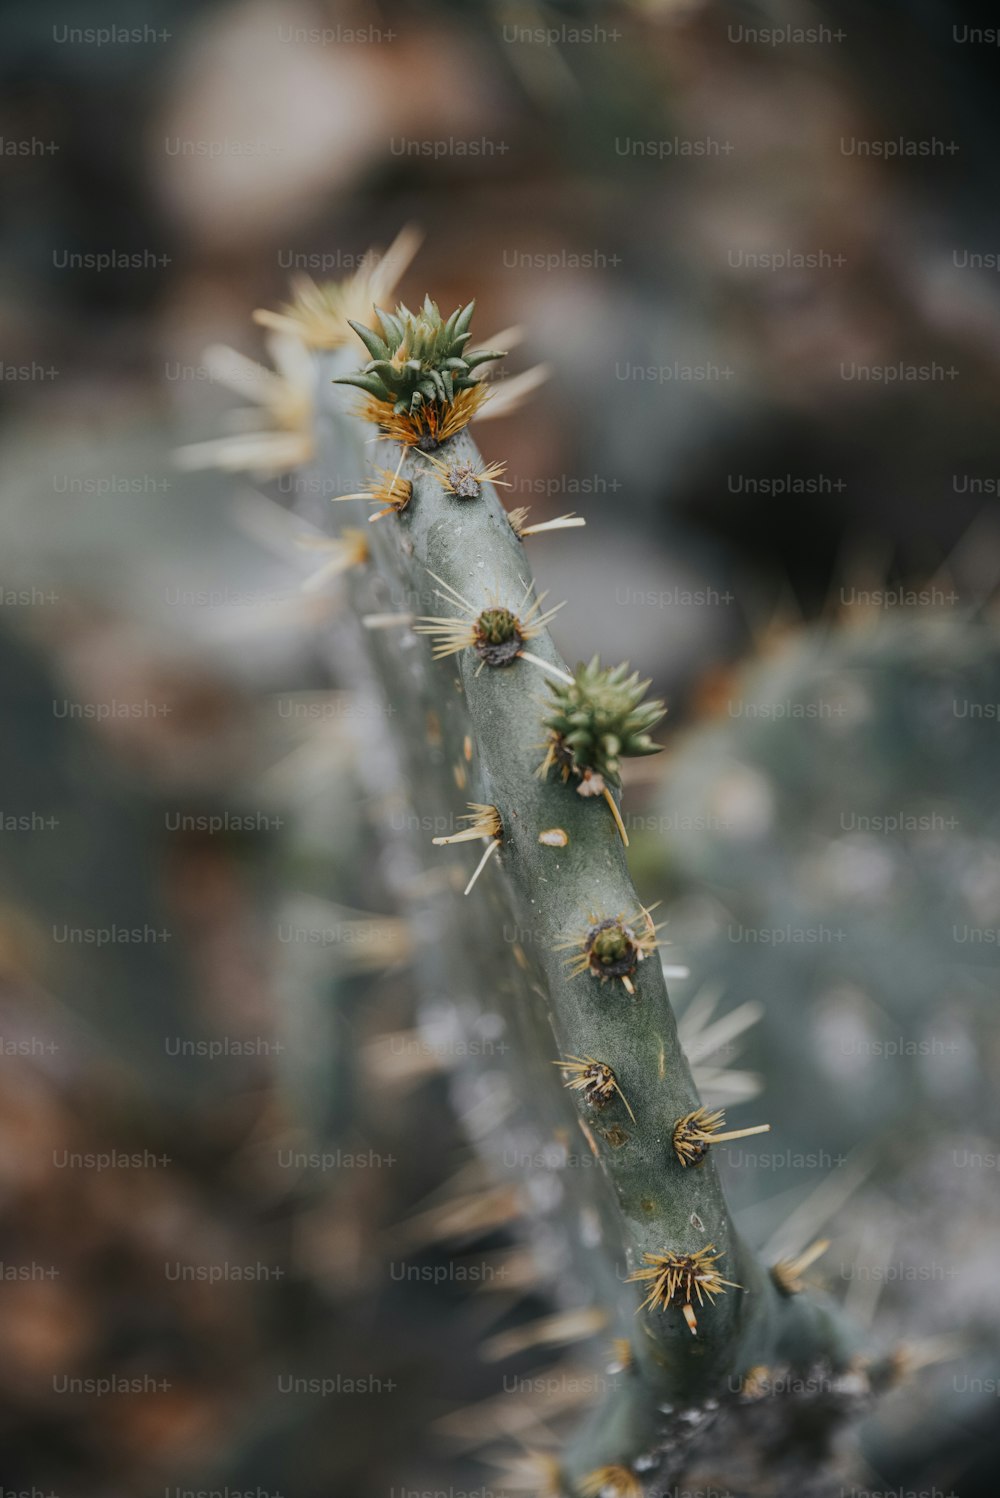 Un primer plano de una planta de cactus con pequeños brotes